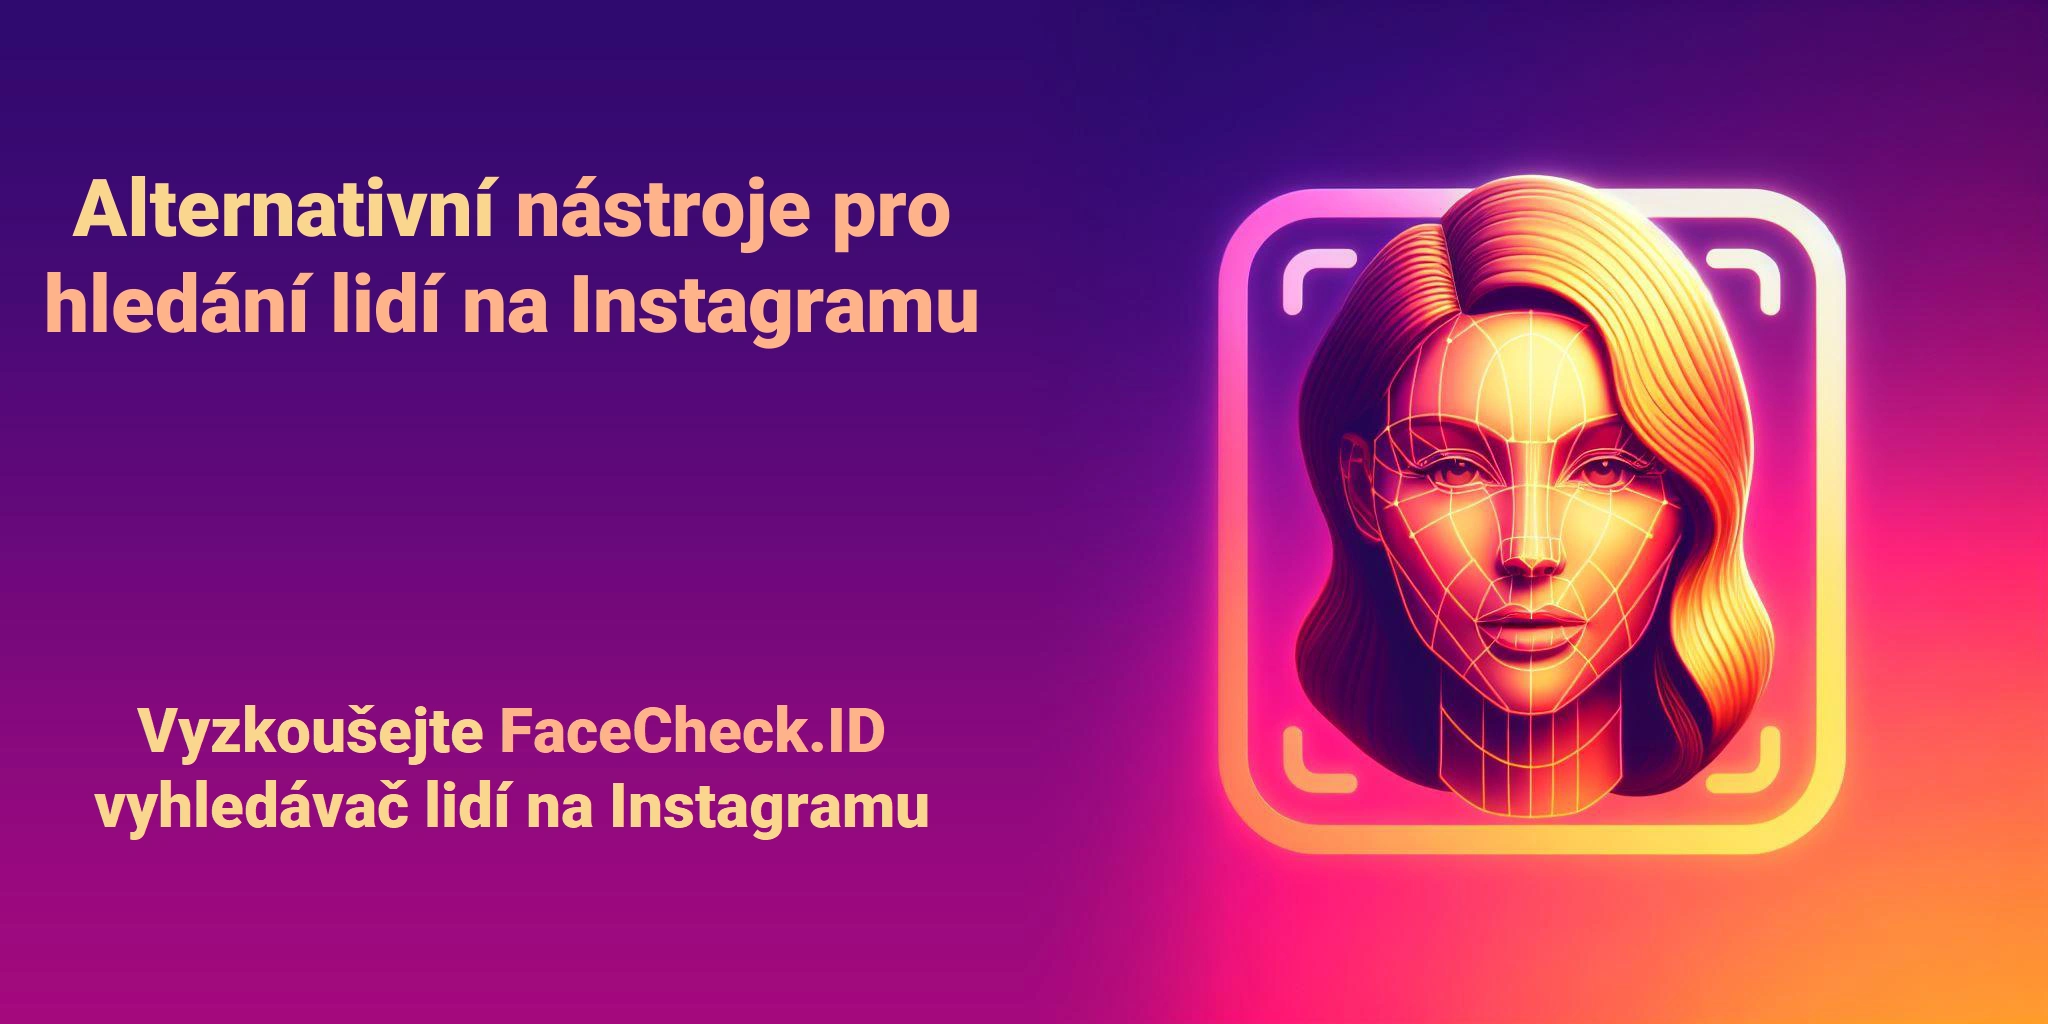 Alternativní nástroje pro hledání lidí na Instagramu Vyzkoušejte FaceCheck.ID vyhledávač lidí na Instagramu